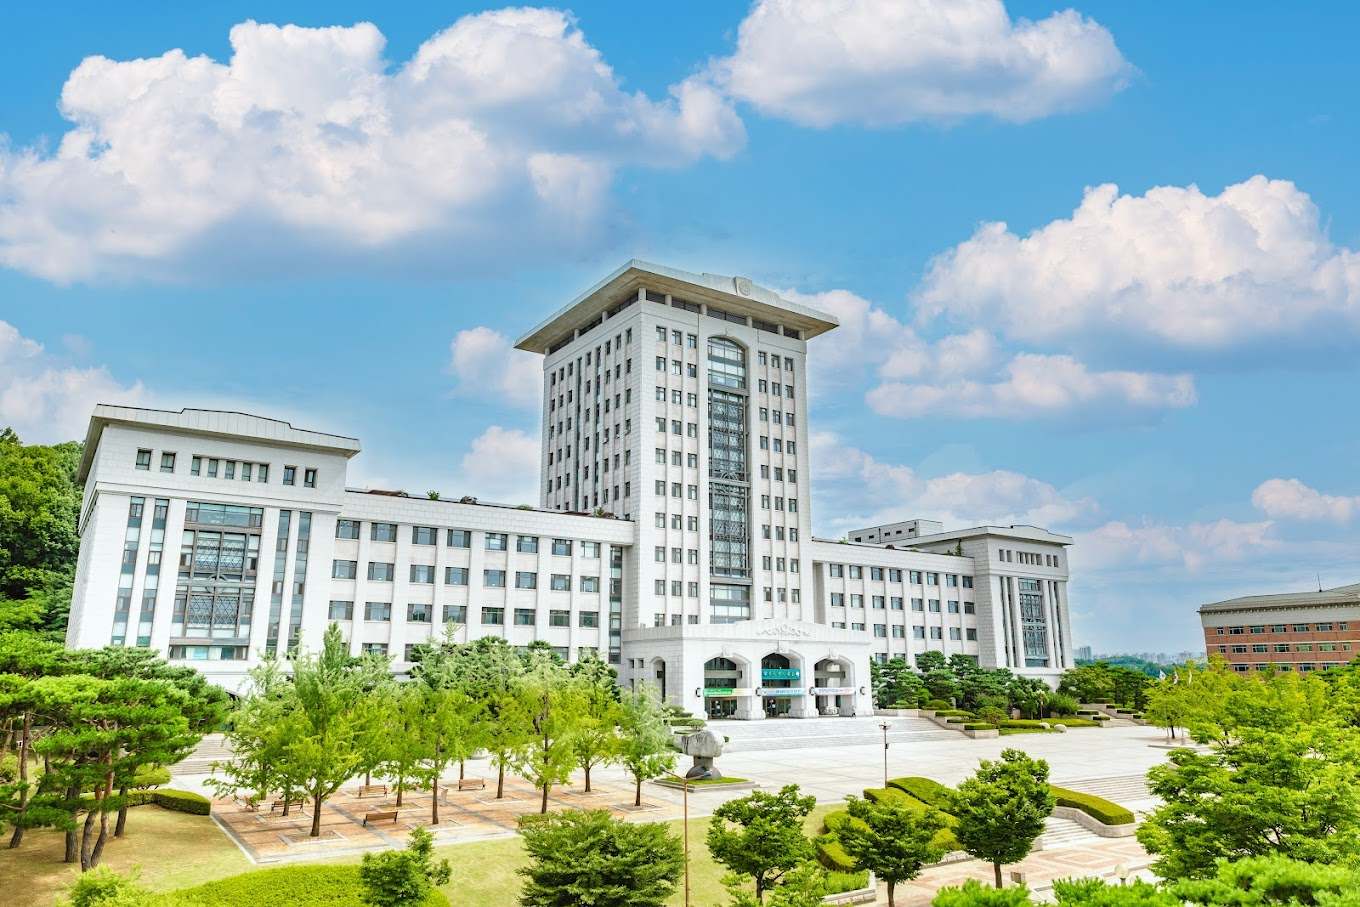 Đại học Sun Moon là nơi tập trung của các tập đoàn lớn như Hyundai, Samsung, LG,...